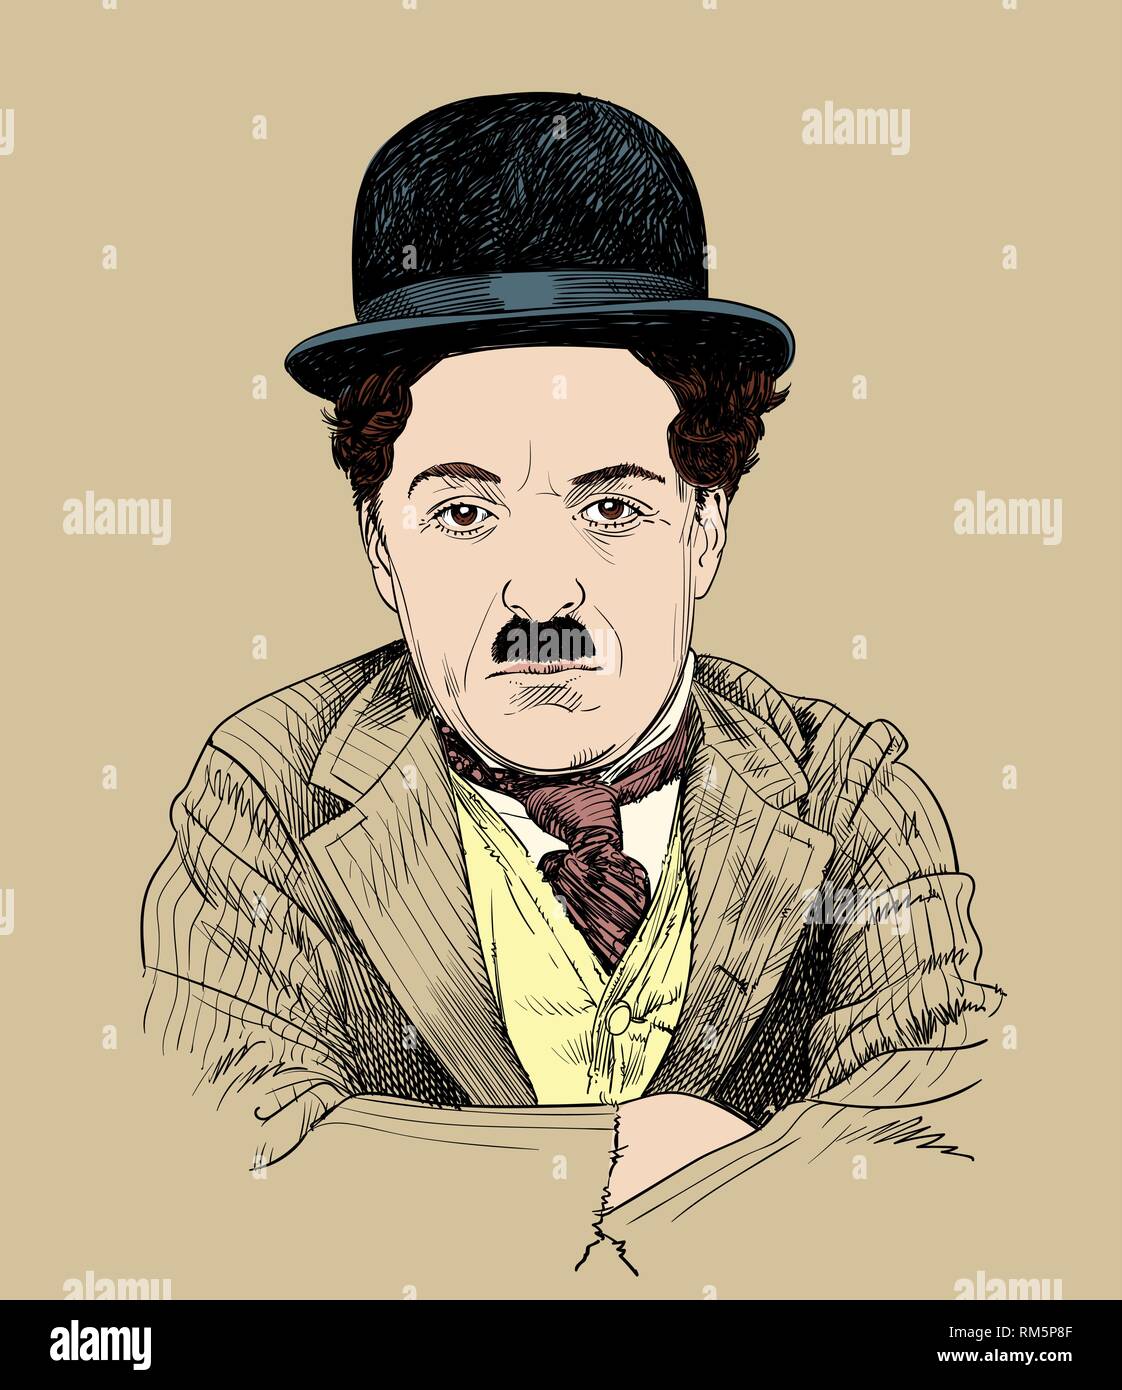 Charlie Chaplin retrato en line art illustration. Fue actor cómico Inglés, movie maker y compositor que saltó a la fama en la era de la película muda. Ilustración del Vector